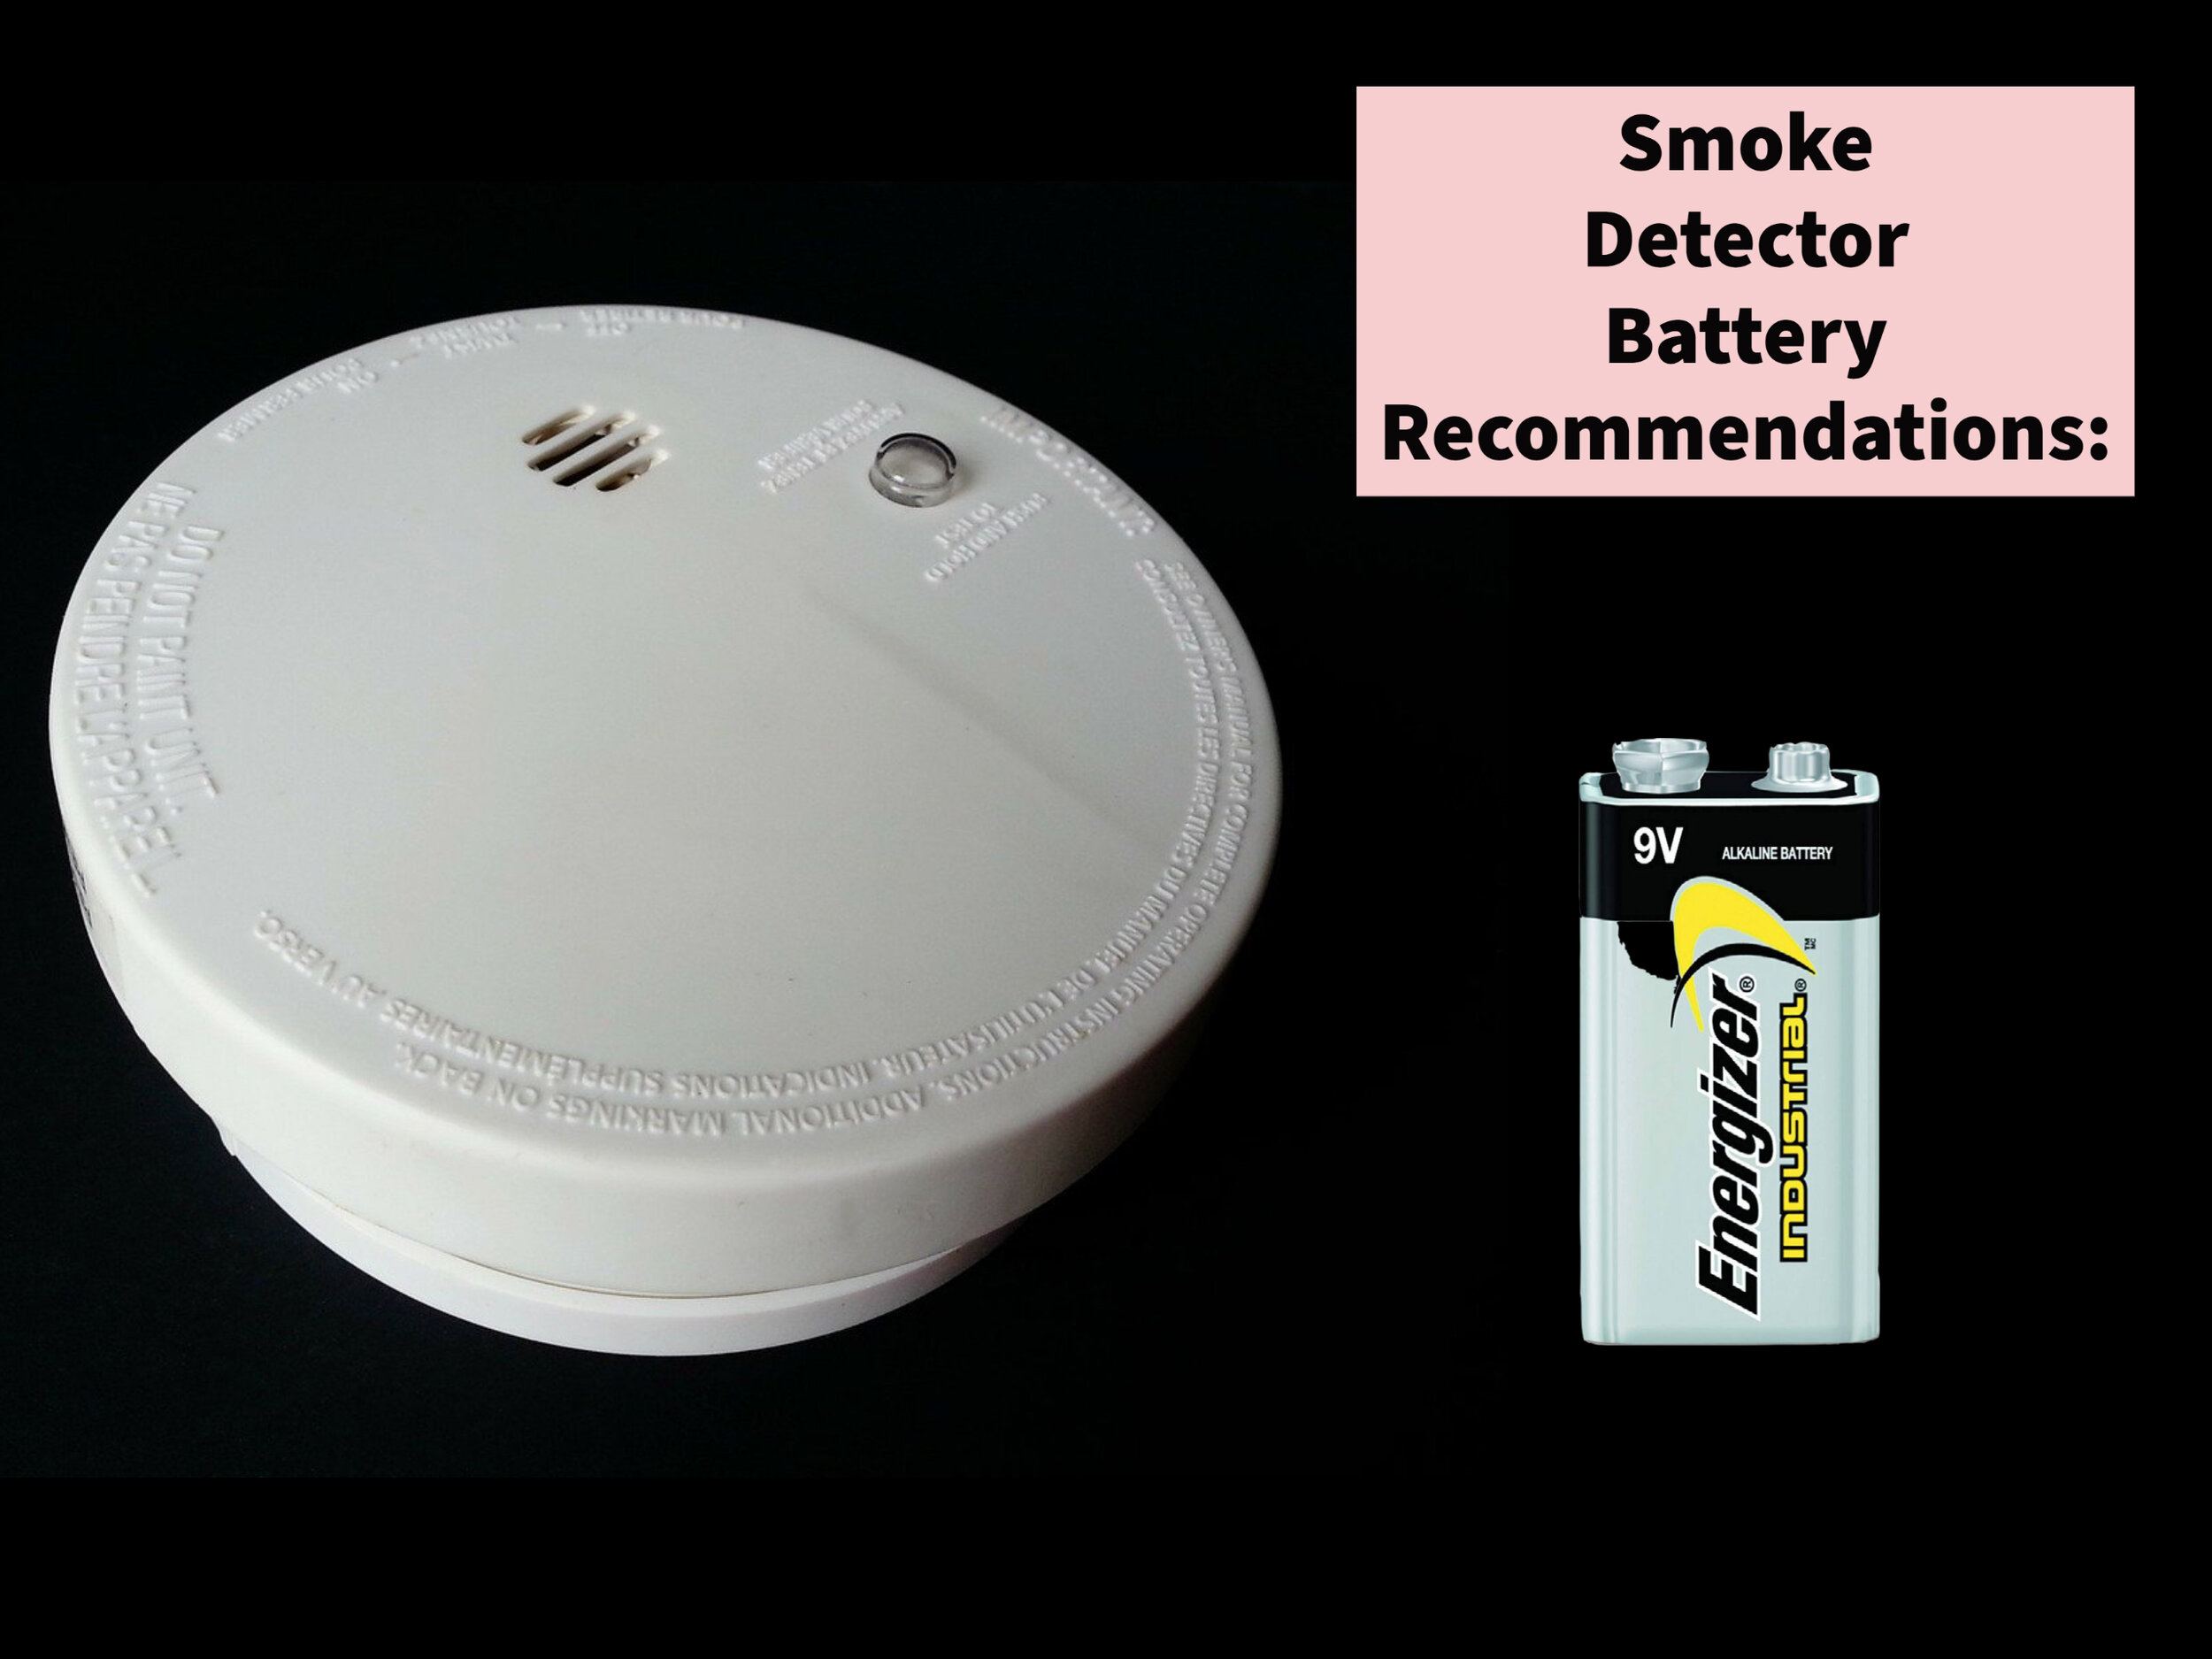 Ce marcă de baterii este cea mai bună pentru detectoarele de fum?